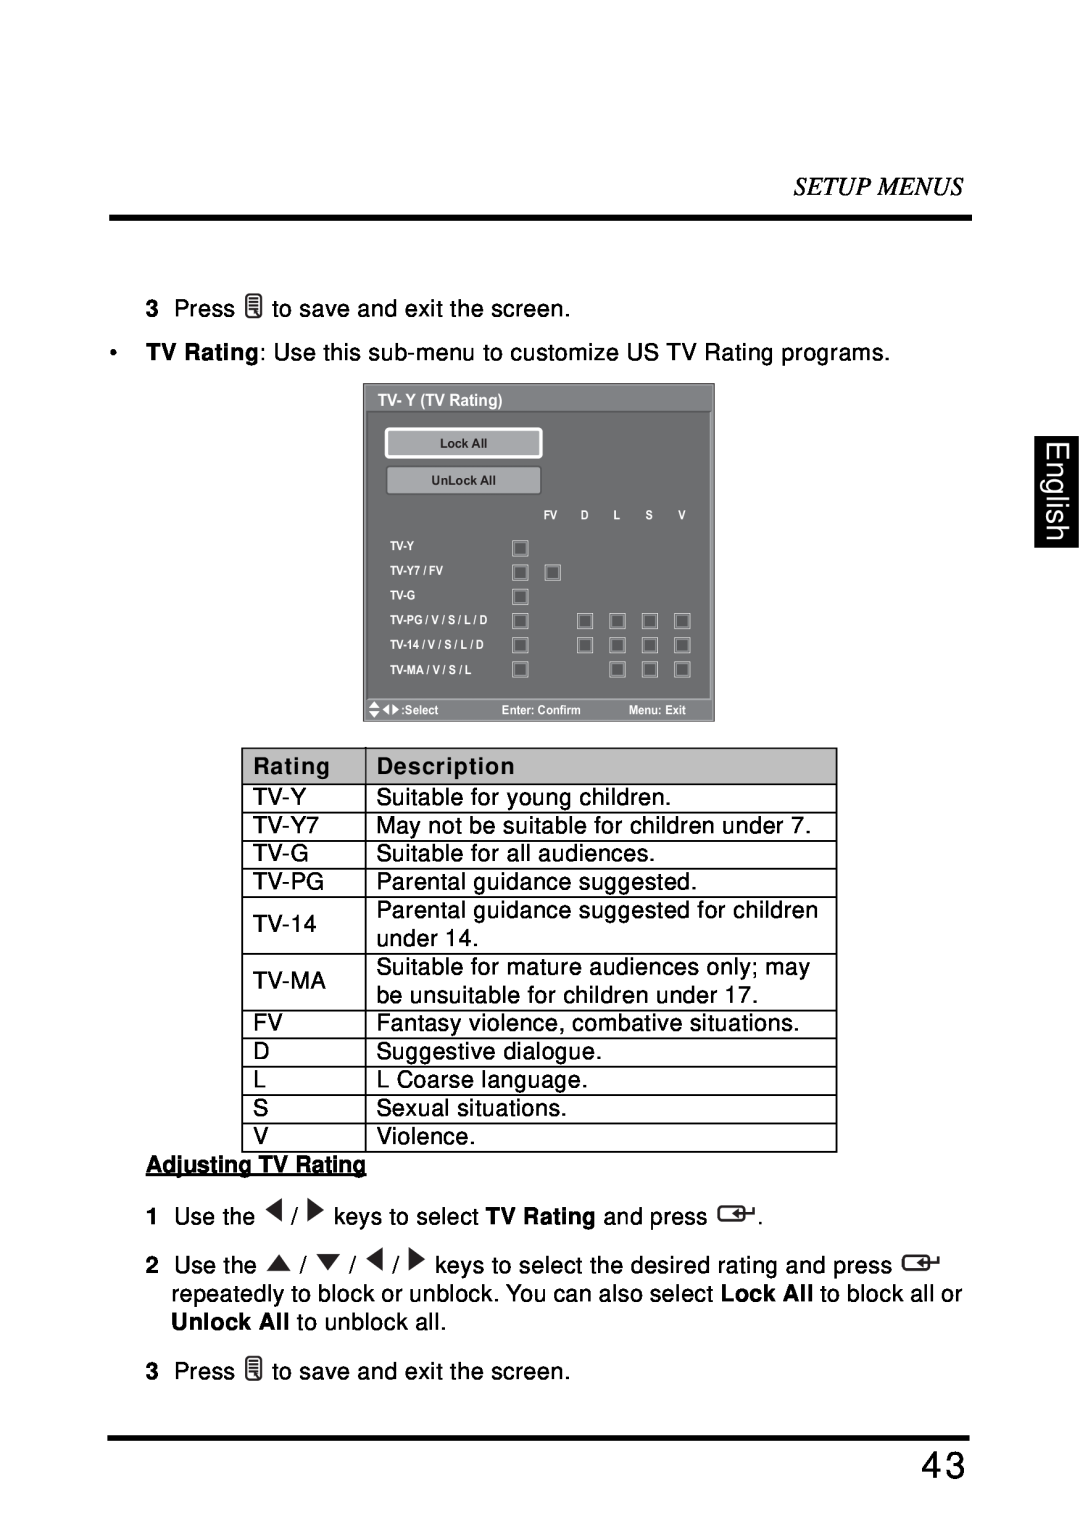 Westinghouse SK-32H640G user manual English, Setup Menus, Description, Adjusting TV Rating 